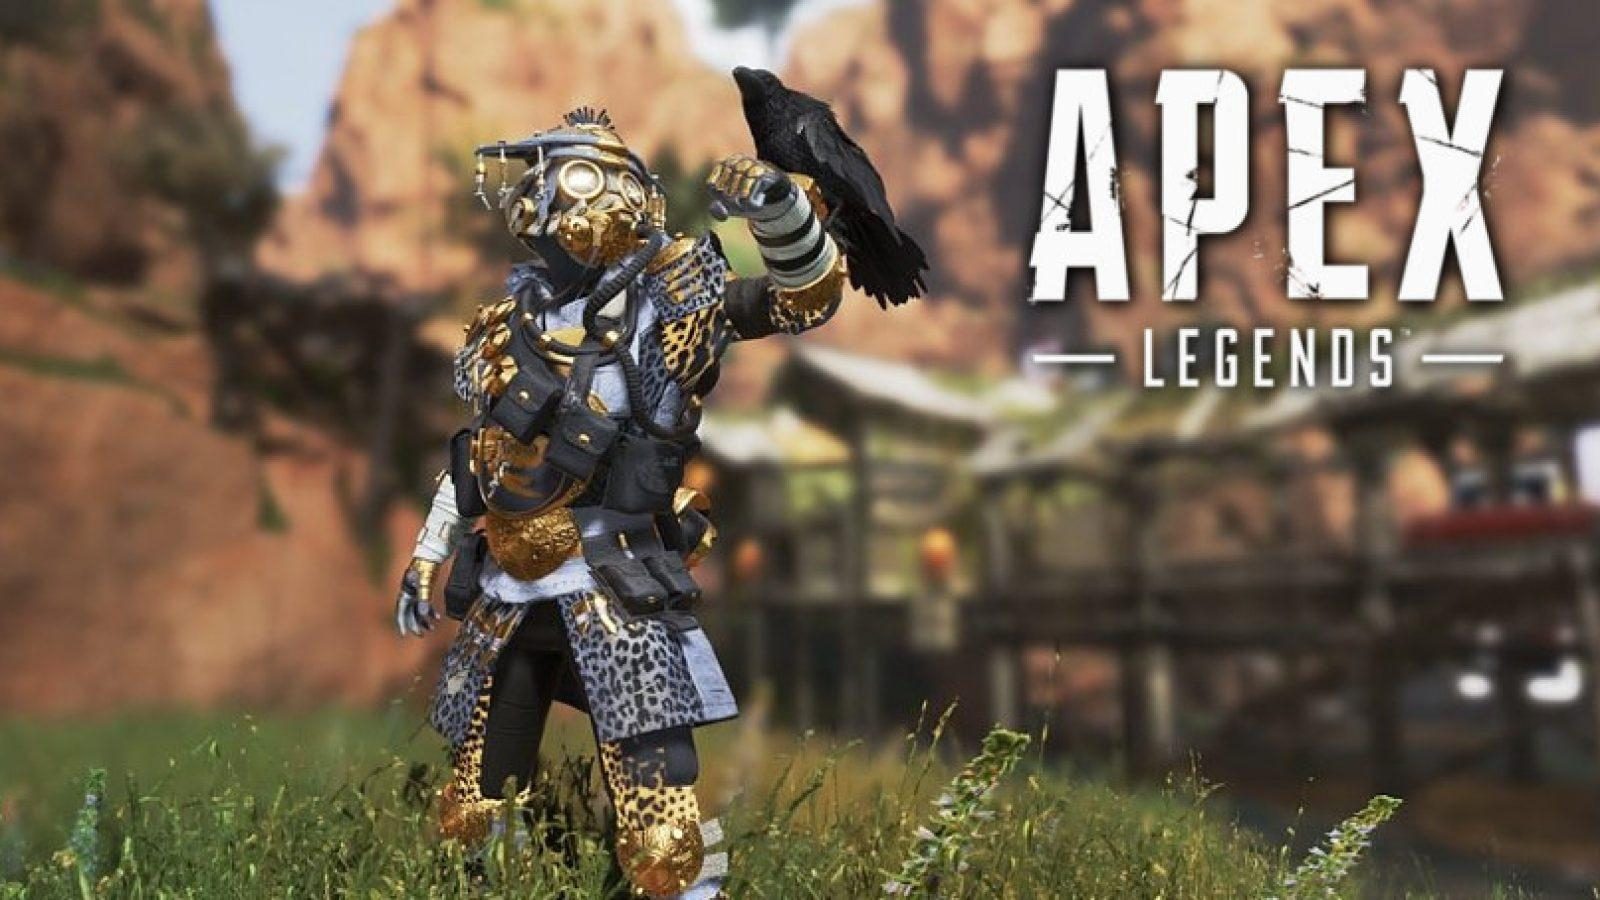 تحدي ابيكس ليجندز Apex Legends legendary hunt bloodhound challenges